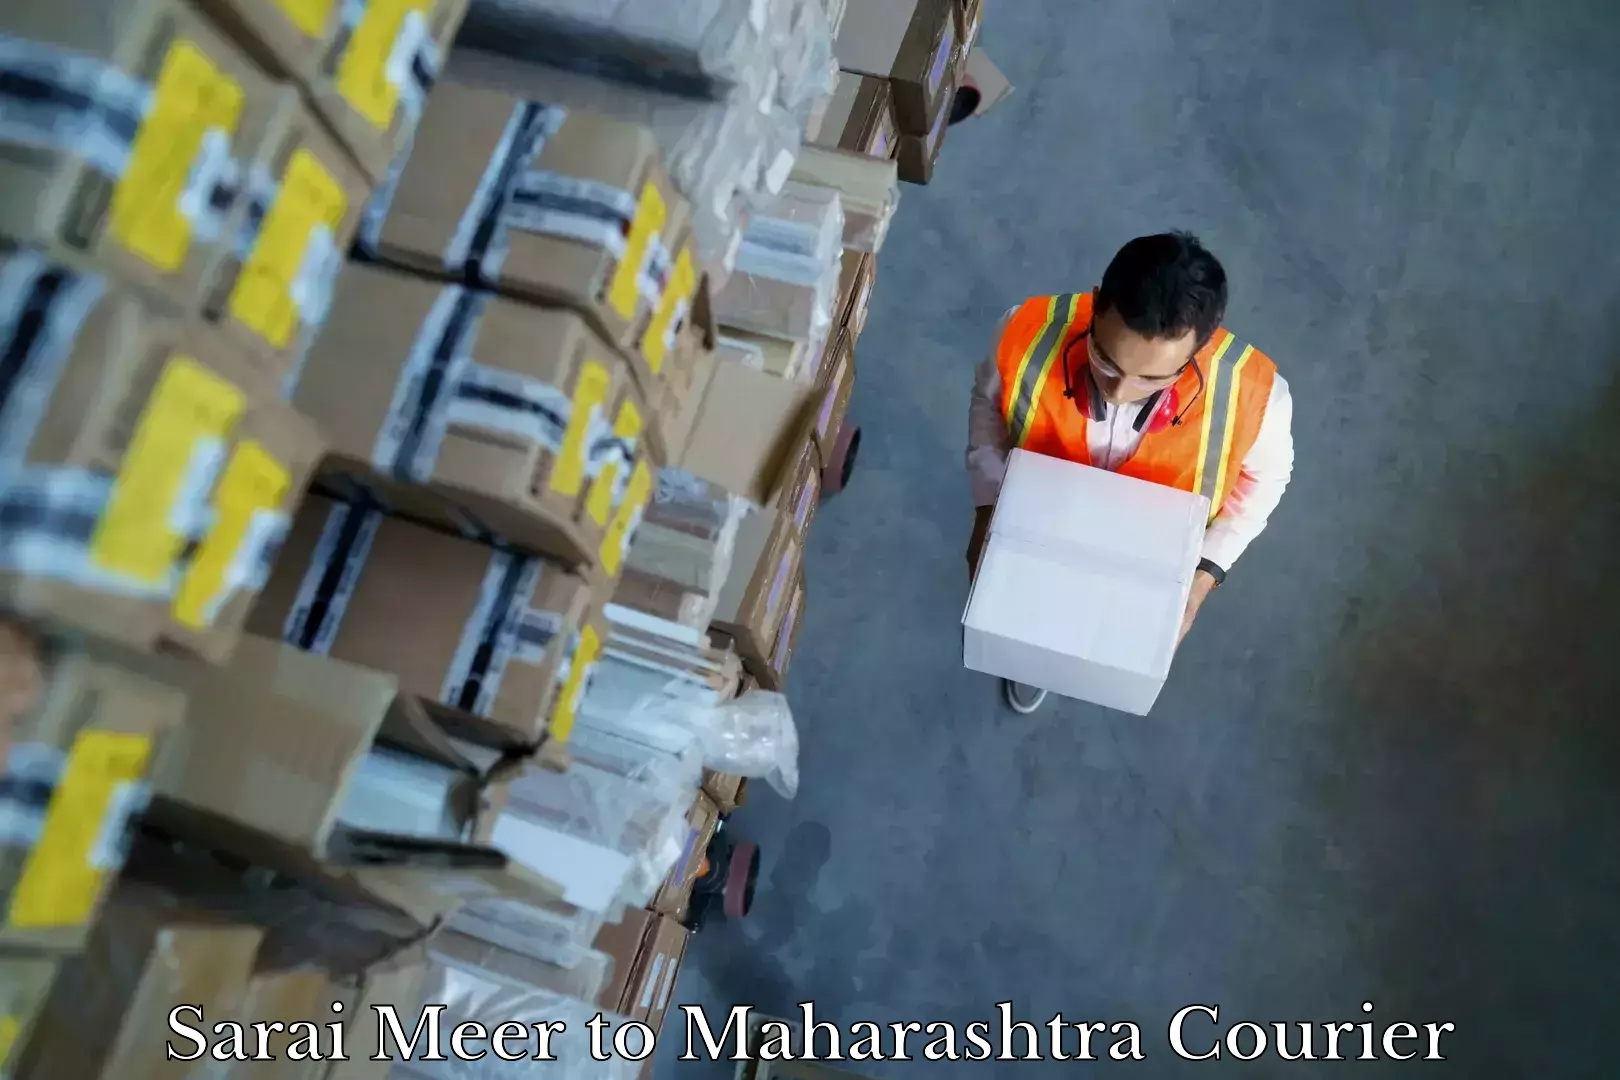 Moving and packing experts Sarai Meer to Maharashtra